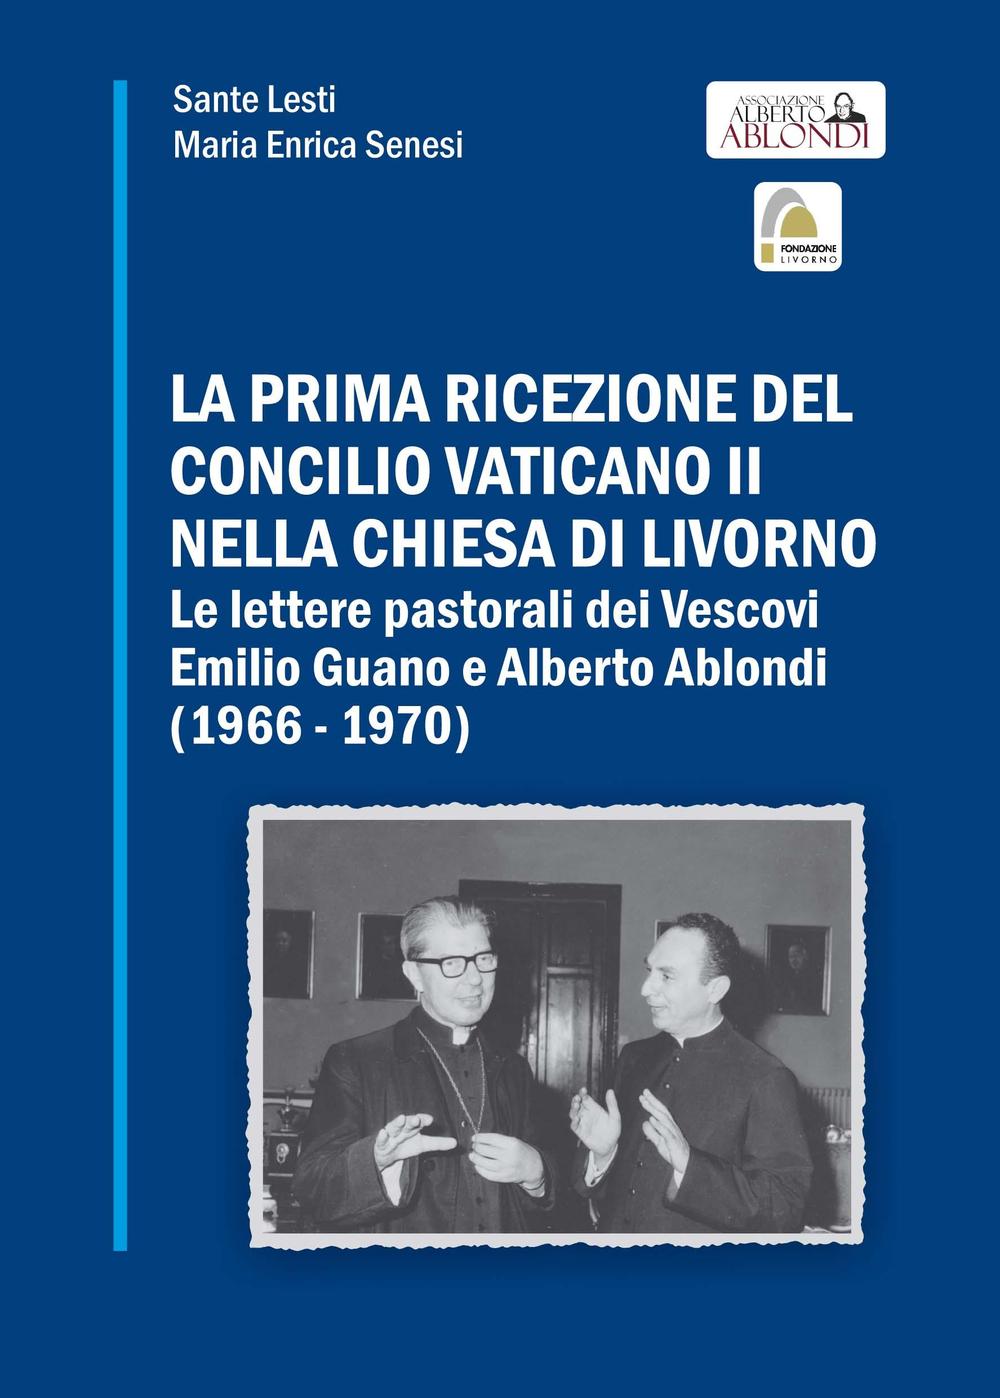 La prima ricezione del Concilio Vaticano II nella chiesa di Livorno. Le lettere pastorali dei vescovi Emilio Guano e Alberto Ablondi (1966-1970)